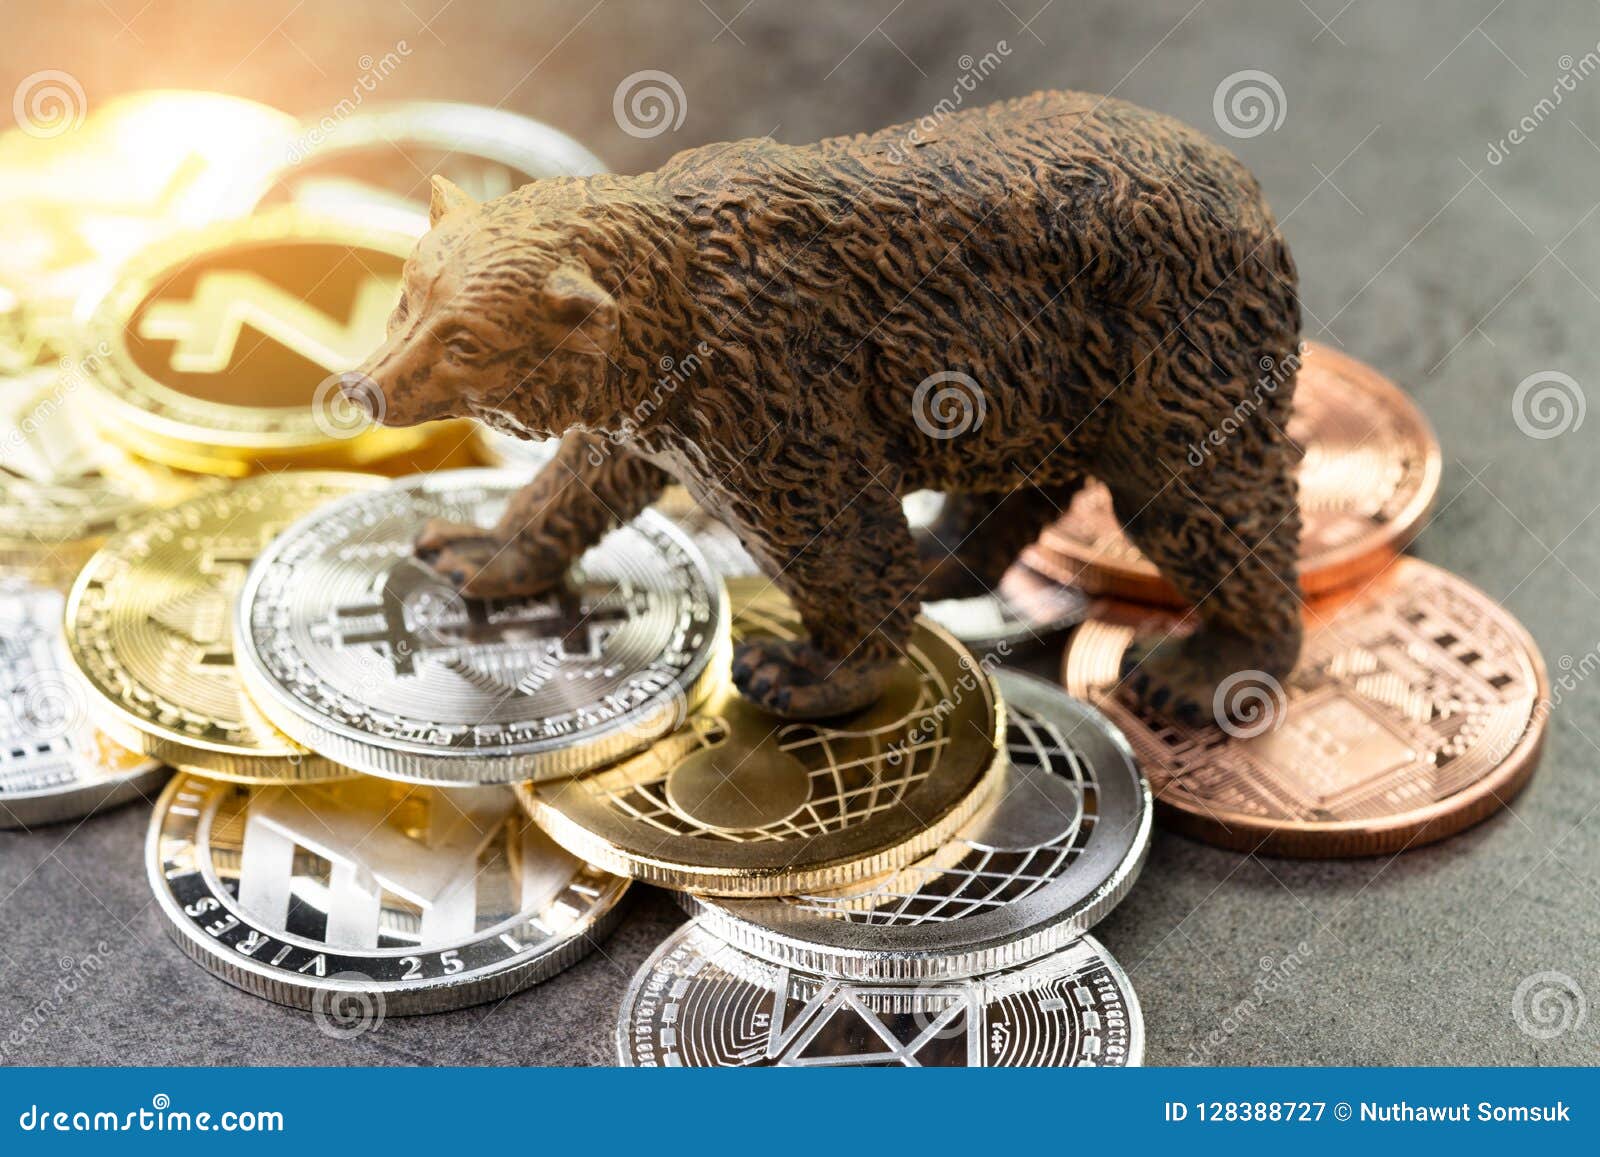 crypto bear market coming